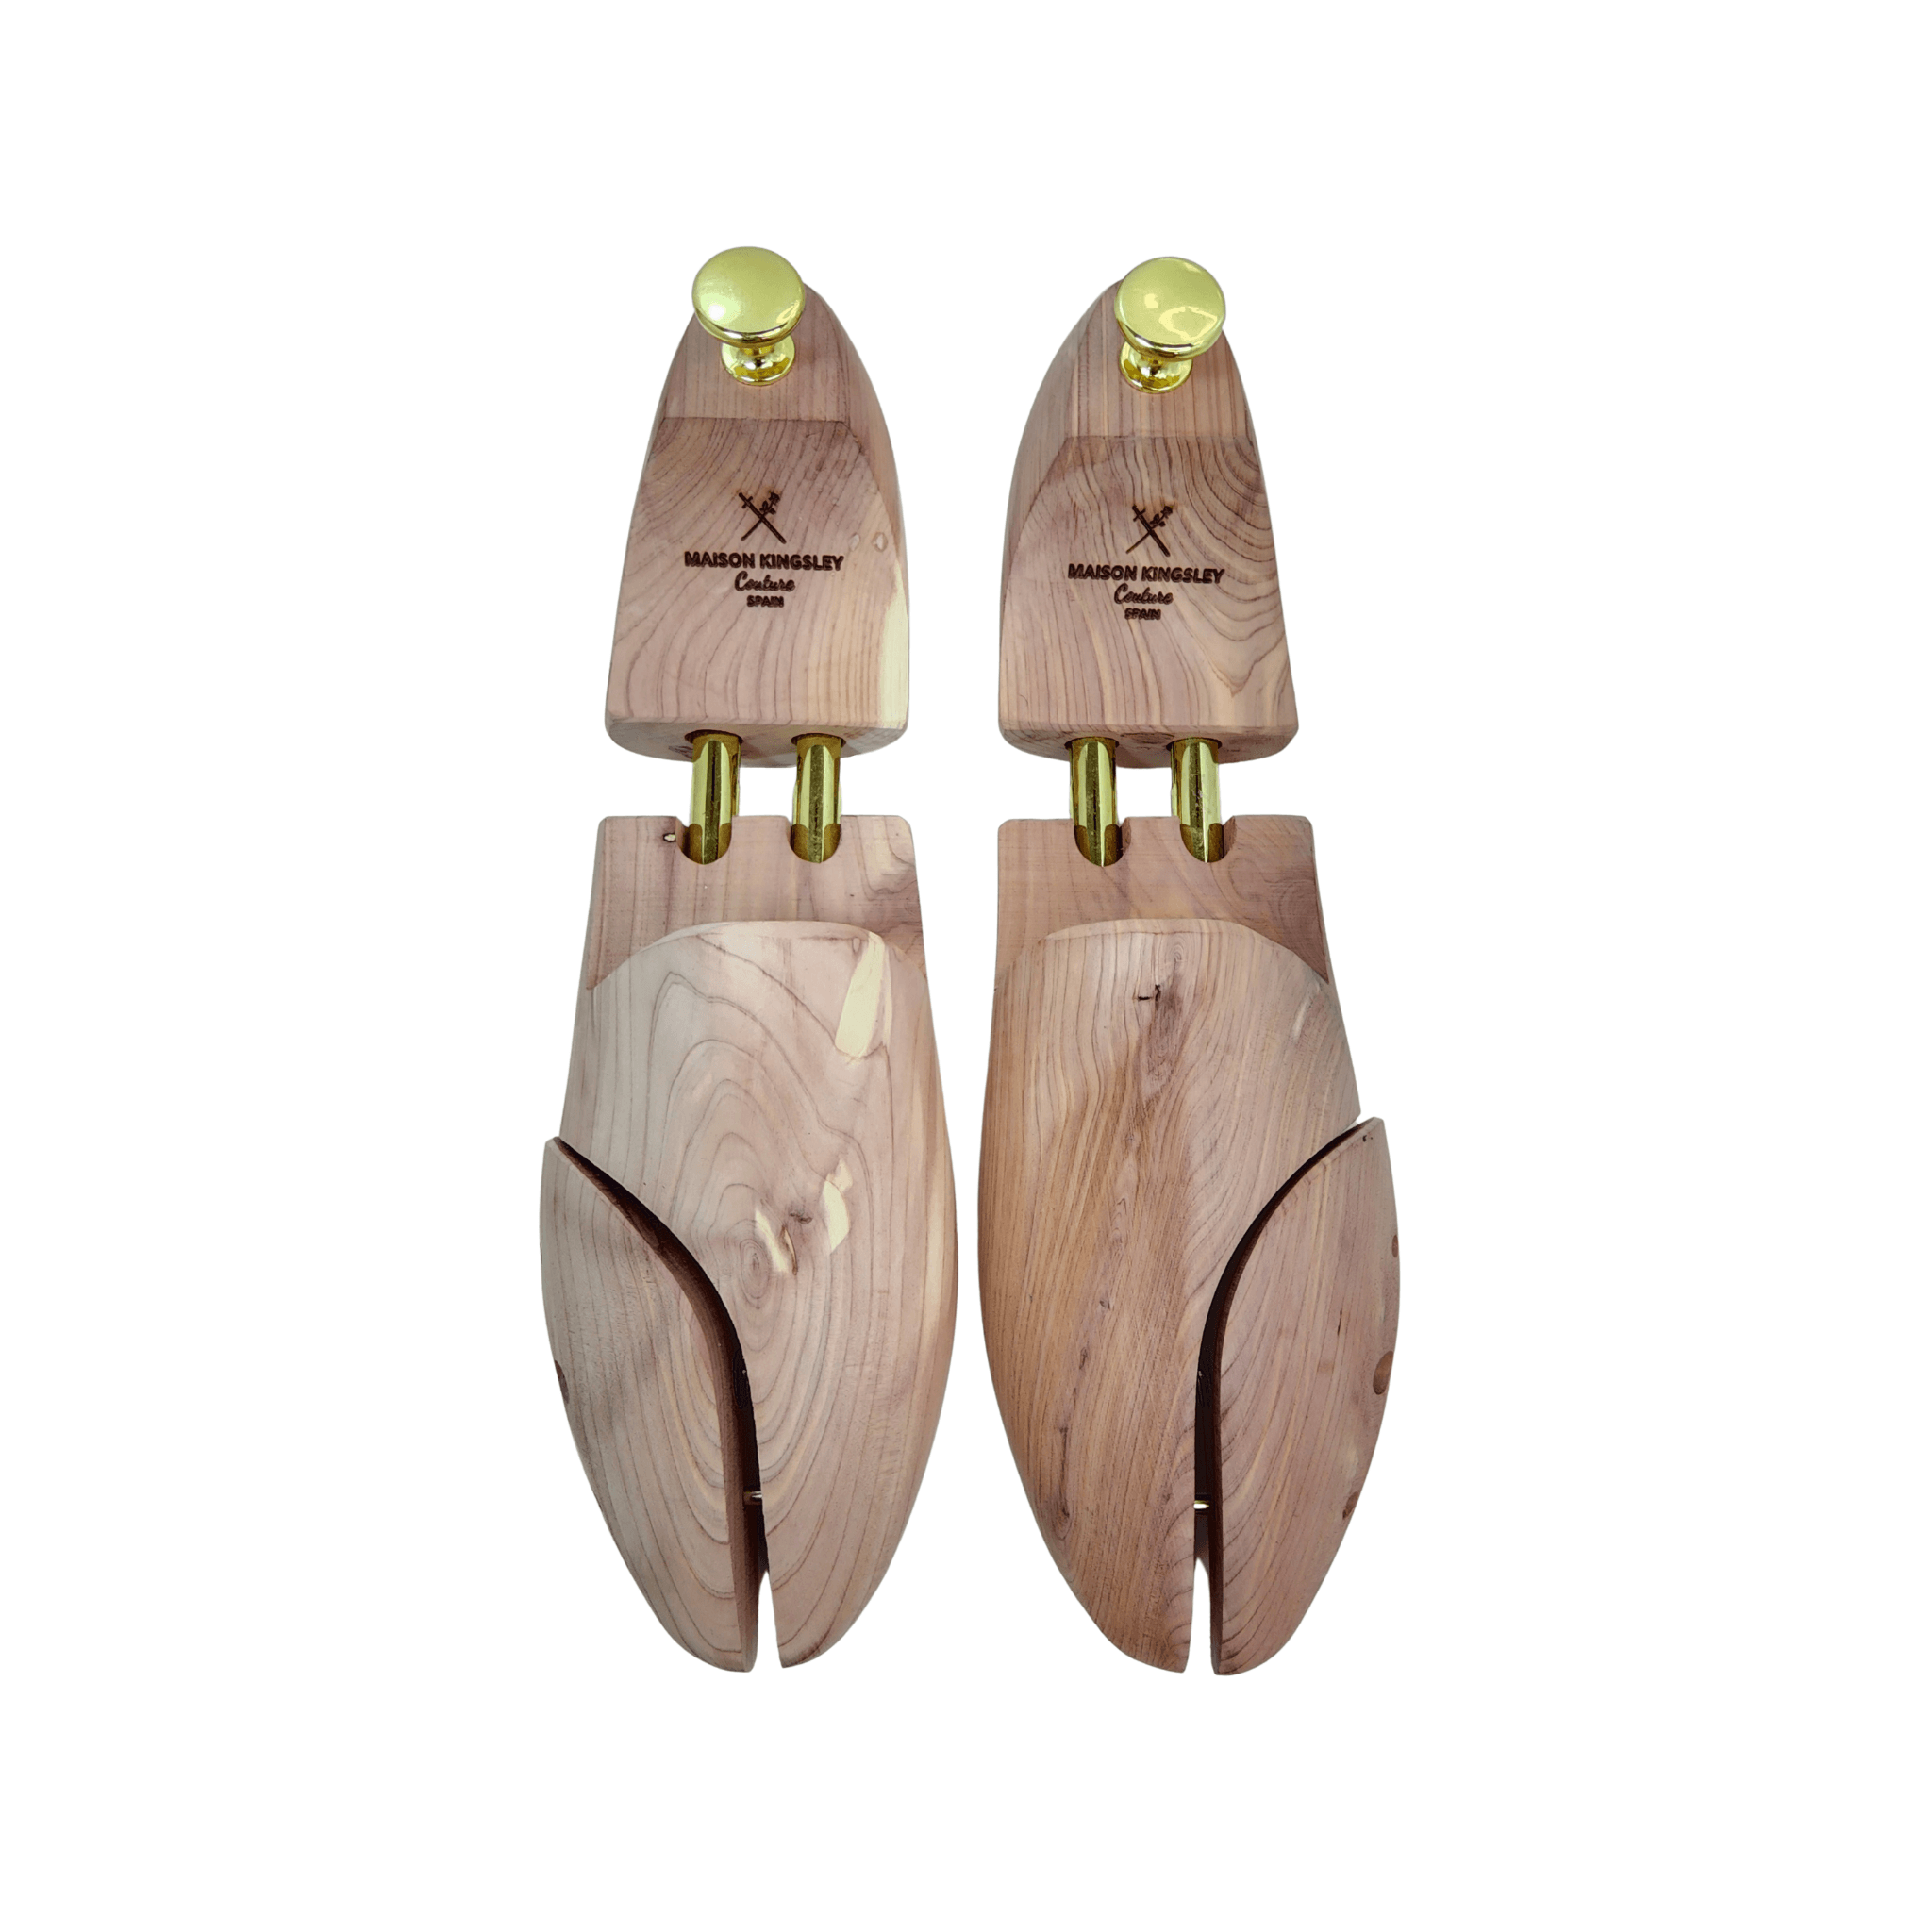 Scarpa Brown Croc Print Calf Men's Jogging Sneakers - Maison de Kingsley Couture Harmonie et Fureur Spain